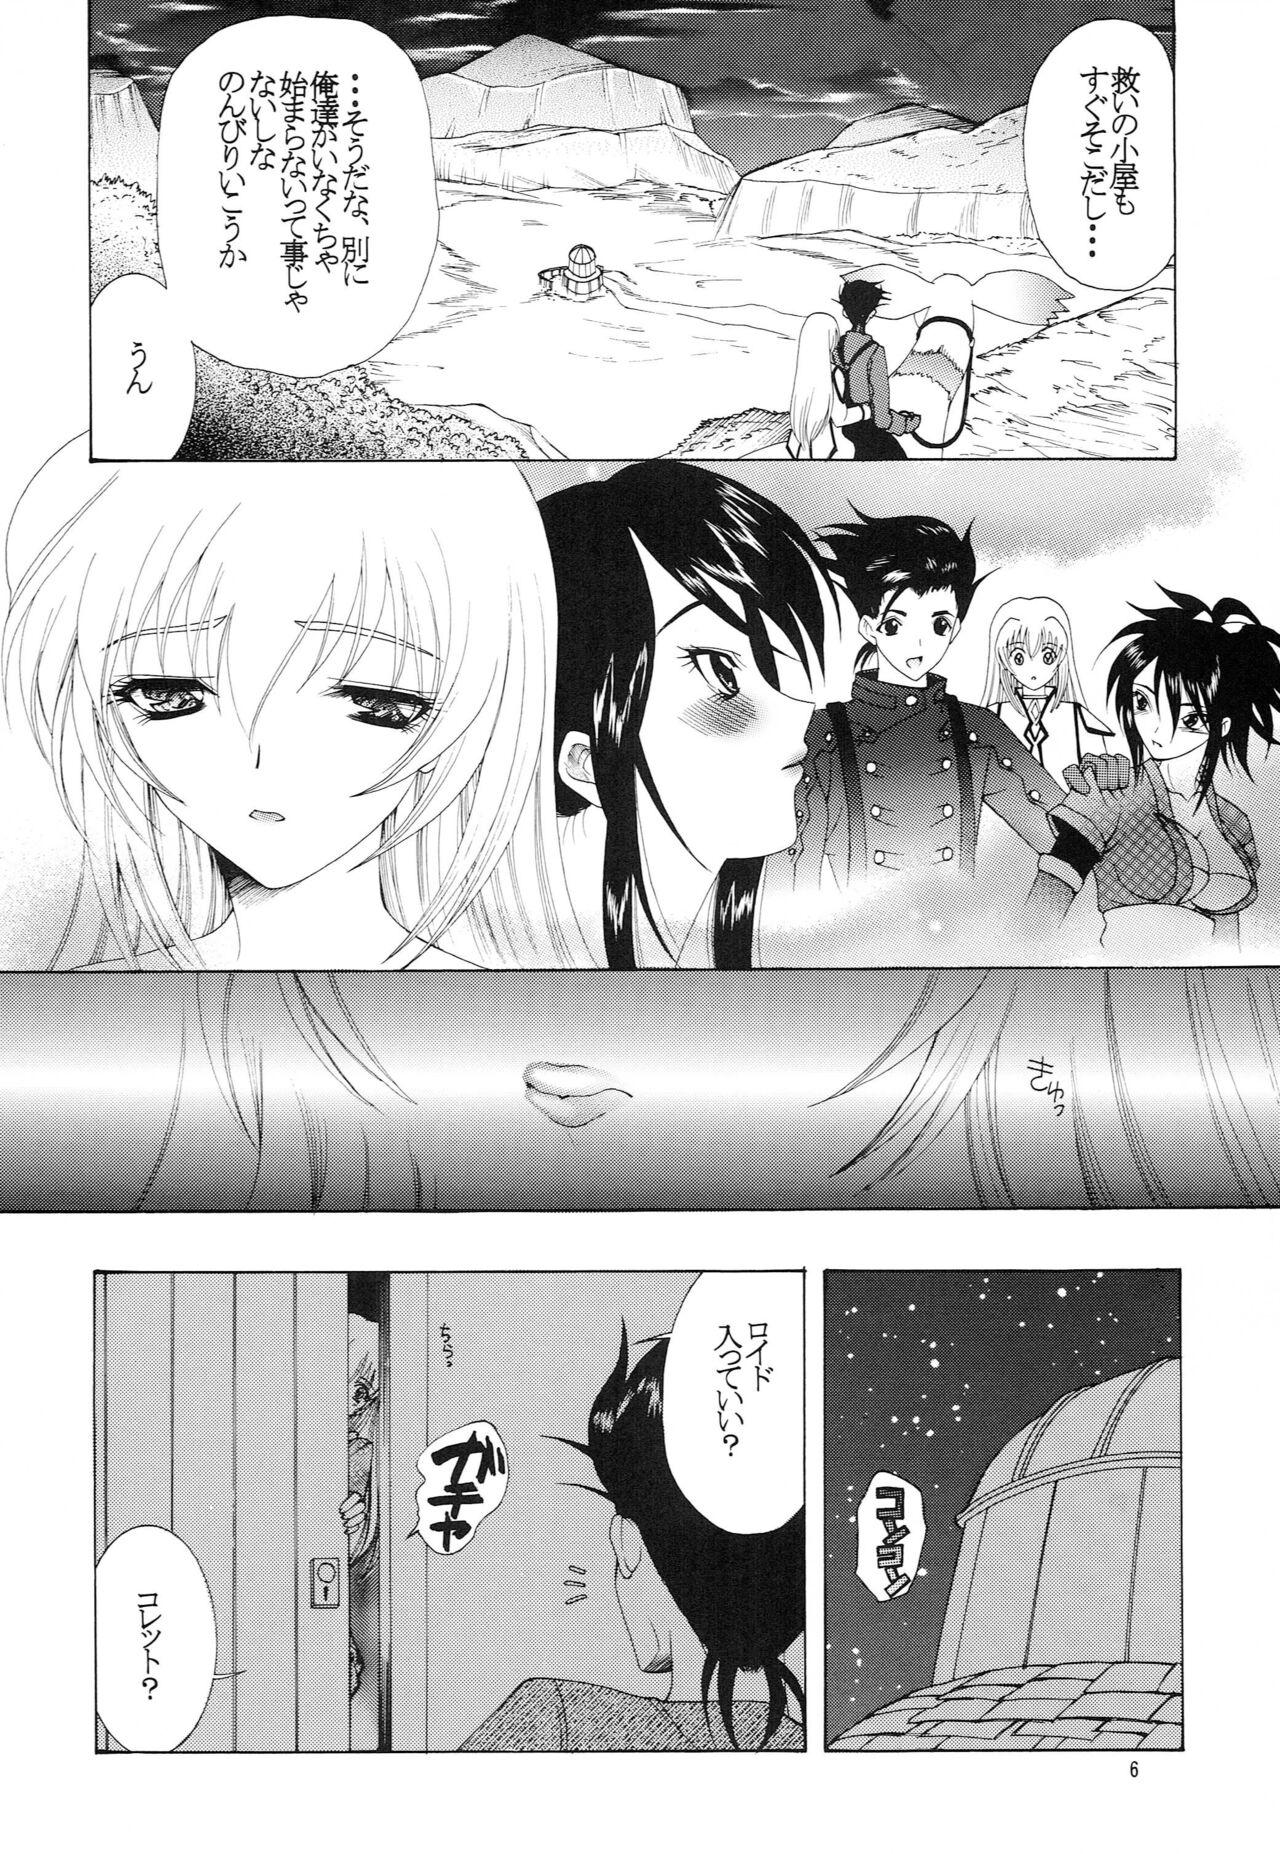 Free Fuck Hibiku no wa, Kono Koi no Uta - Tales of symphonia Married - Page 5